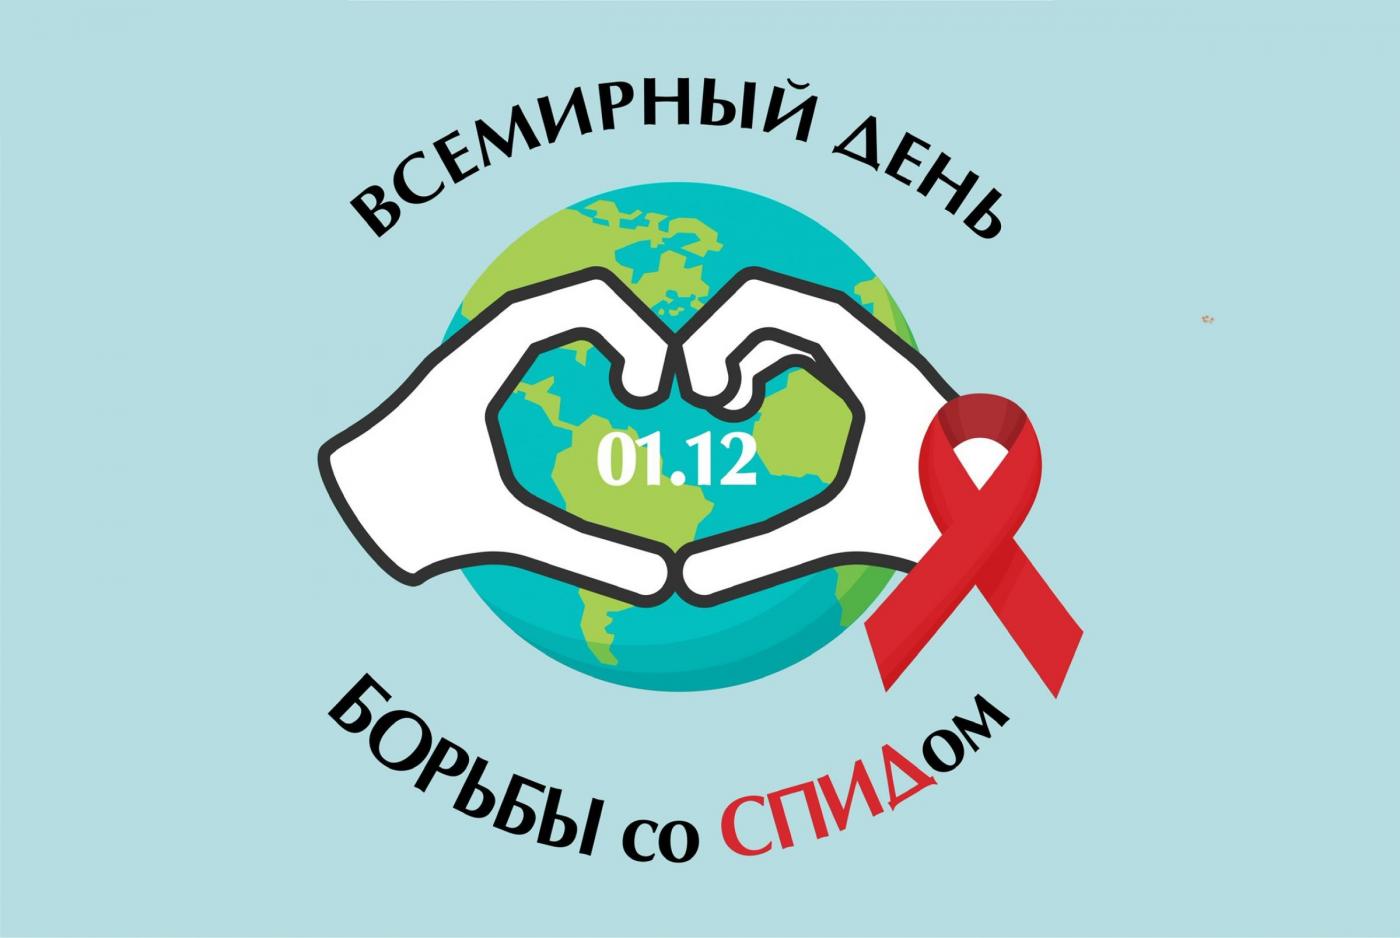 Всемирный день борьбы со СПИДом – время для равенства